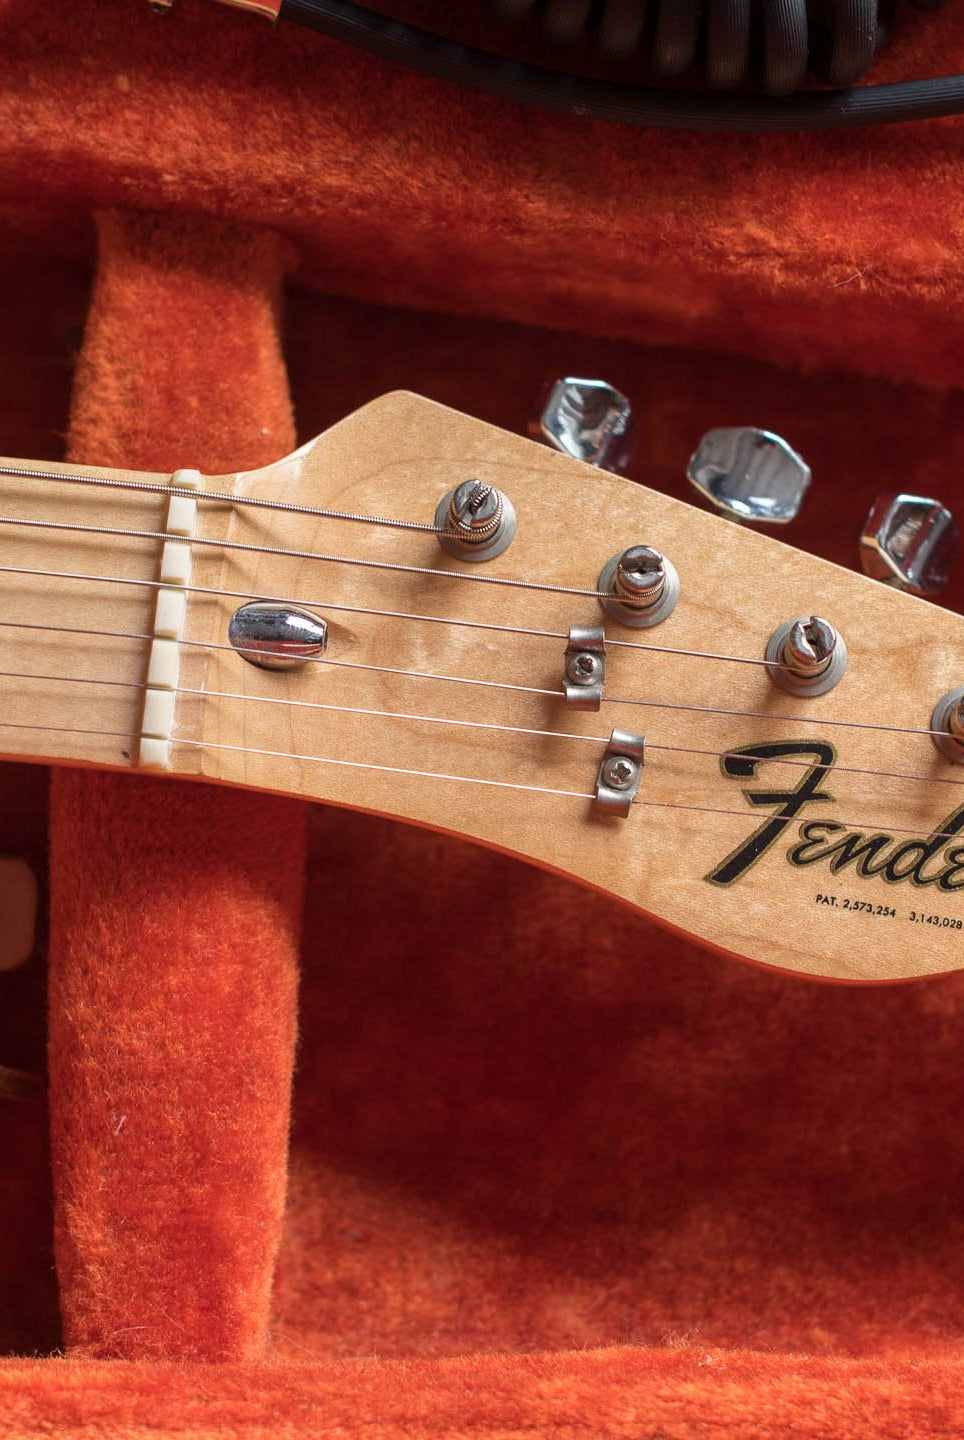 Vintage Guitar Library: book suggestion on vintage Fender Telecaster guitars